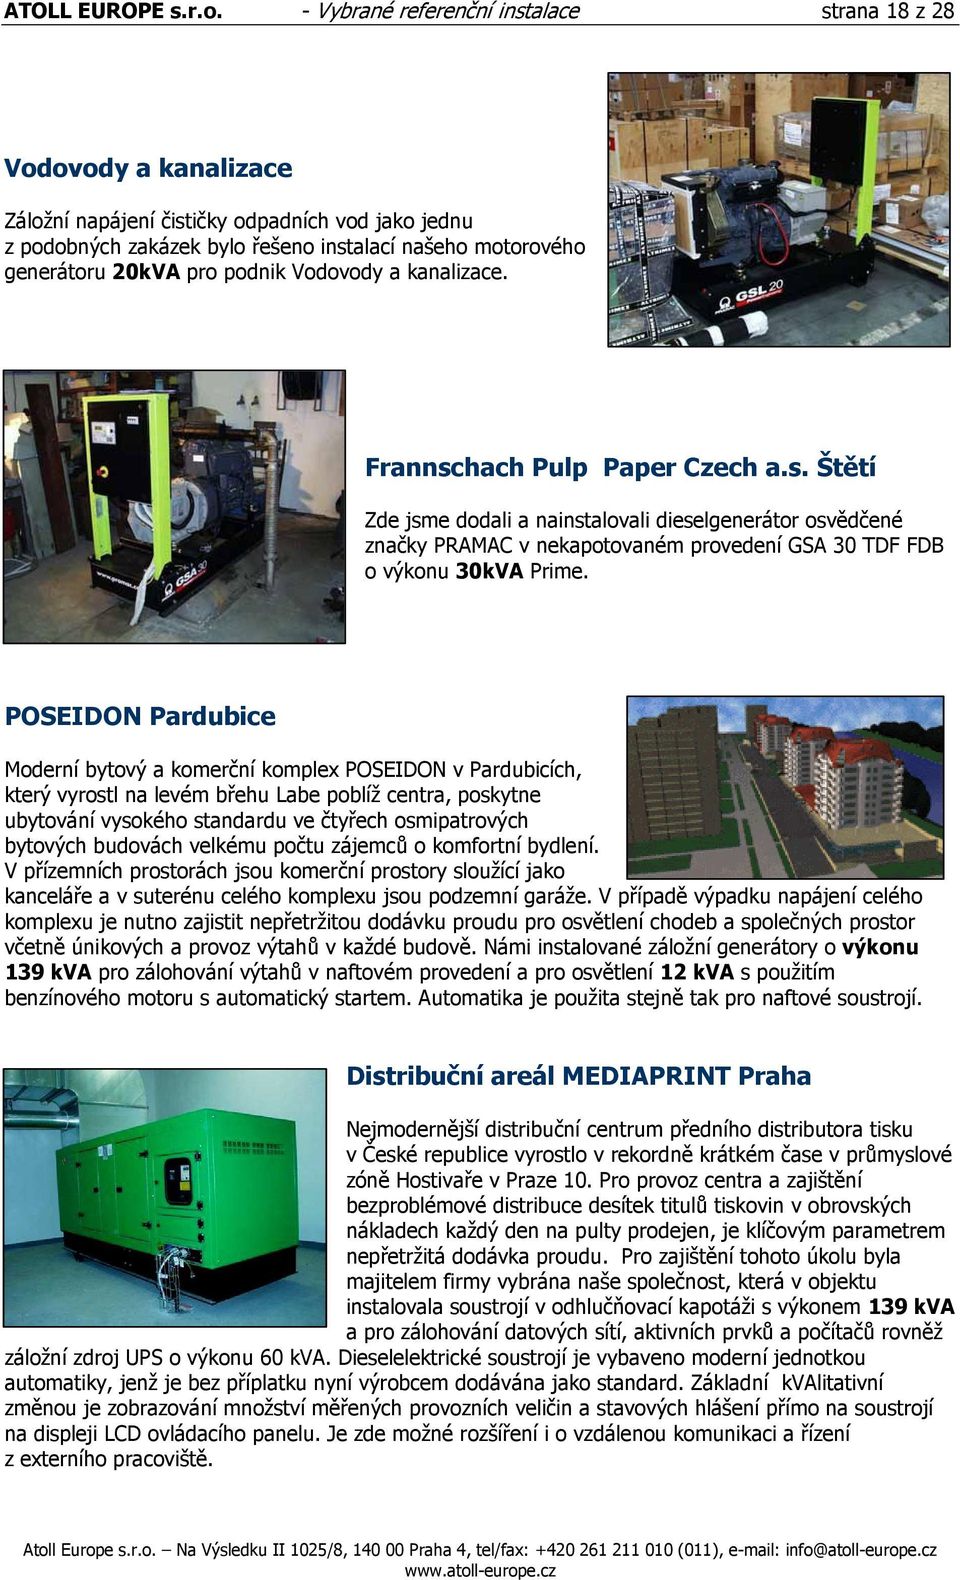 podnik Vodovody a kanalizace. Frannschach Pulp Paper Czech a.s. Štětí Zde jsme dodali a nainstalovali dieselgenerátor osvědčené značky PRAMAC v nekapotovaném provedení GSA 30 TDF FDB o výkonu 30kVA Prime.